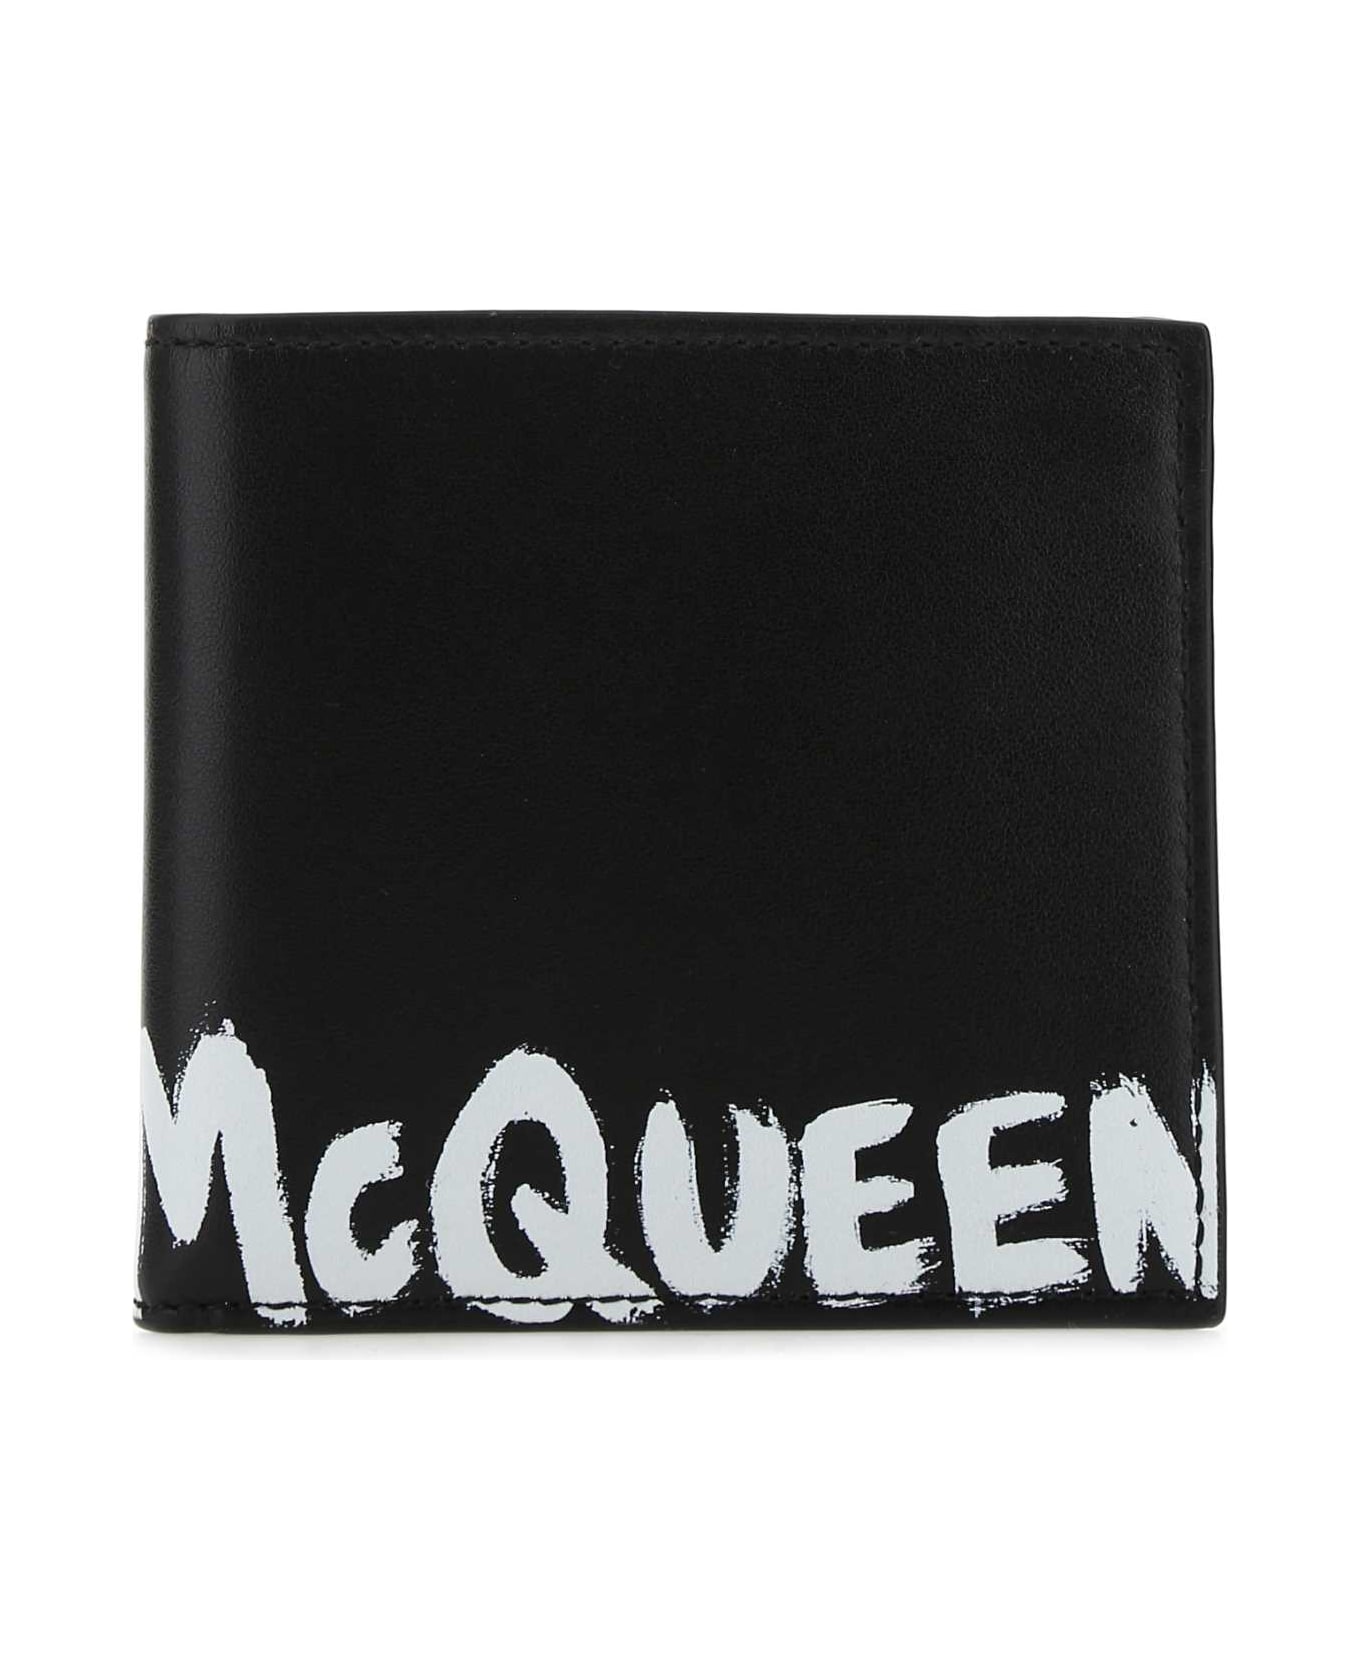 Alexander McQueen Black Leather Wallet - 1070